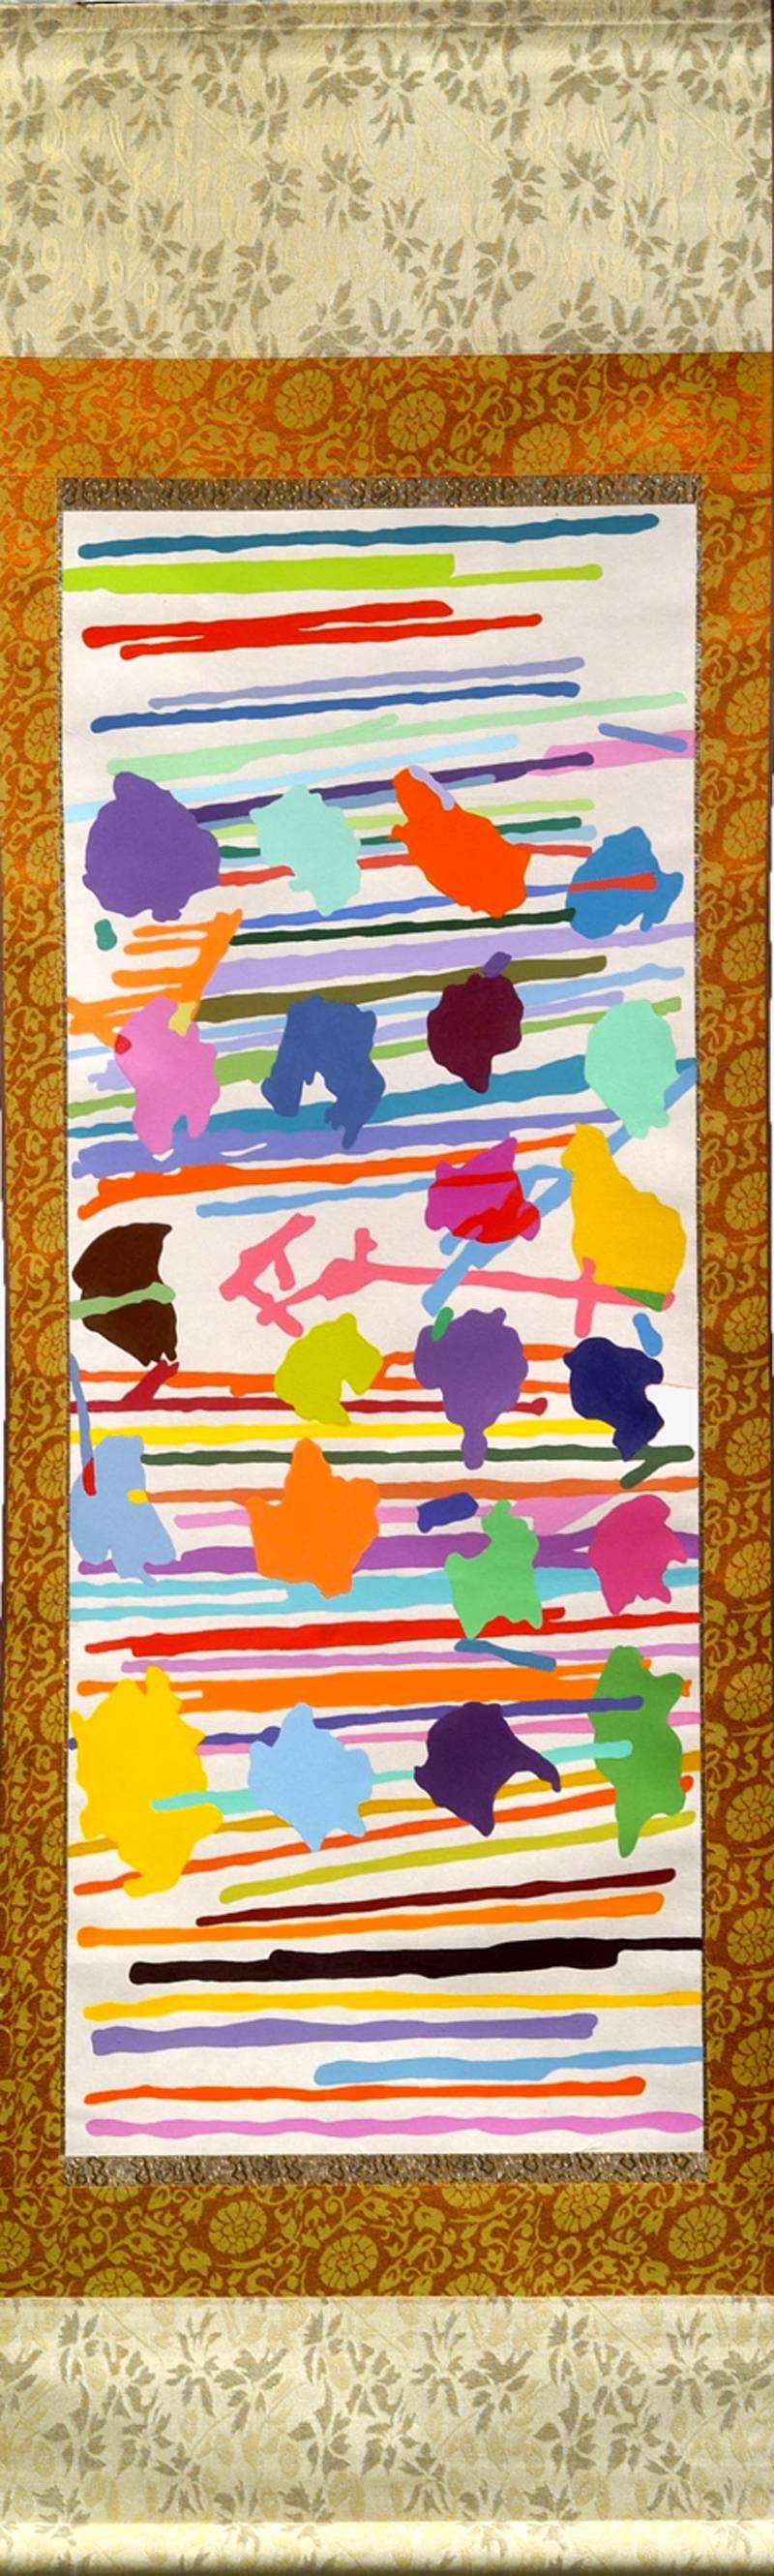 Tom Krumpak Abstract Painting - Scroll #1